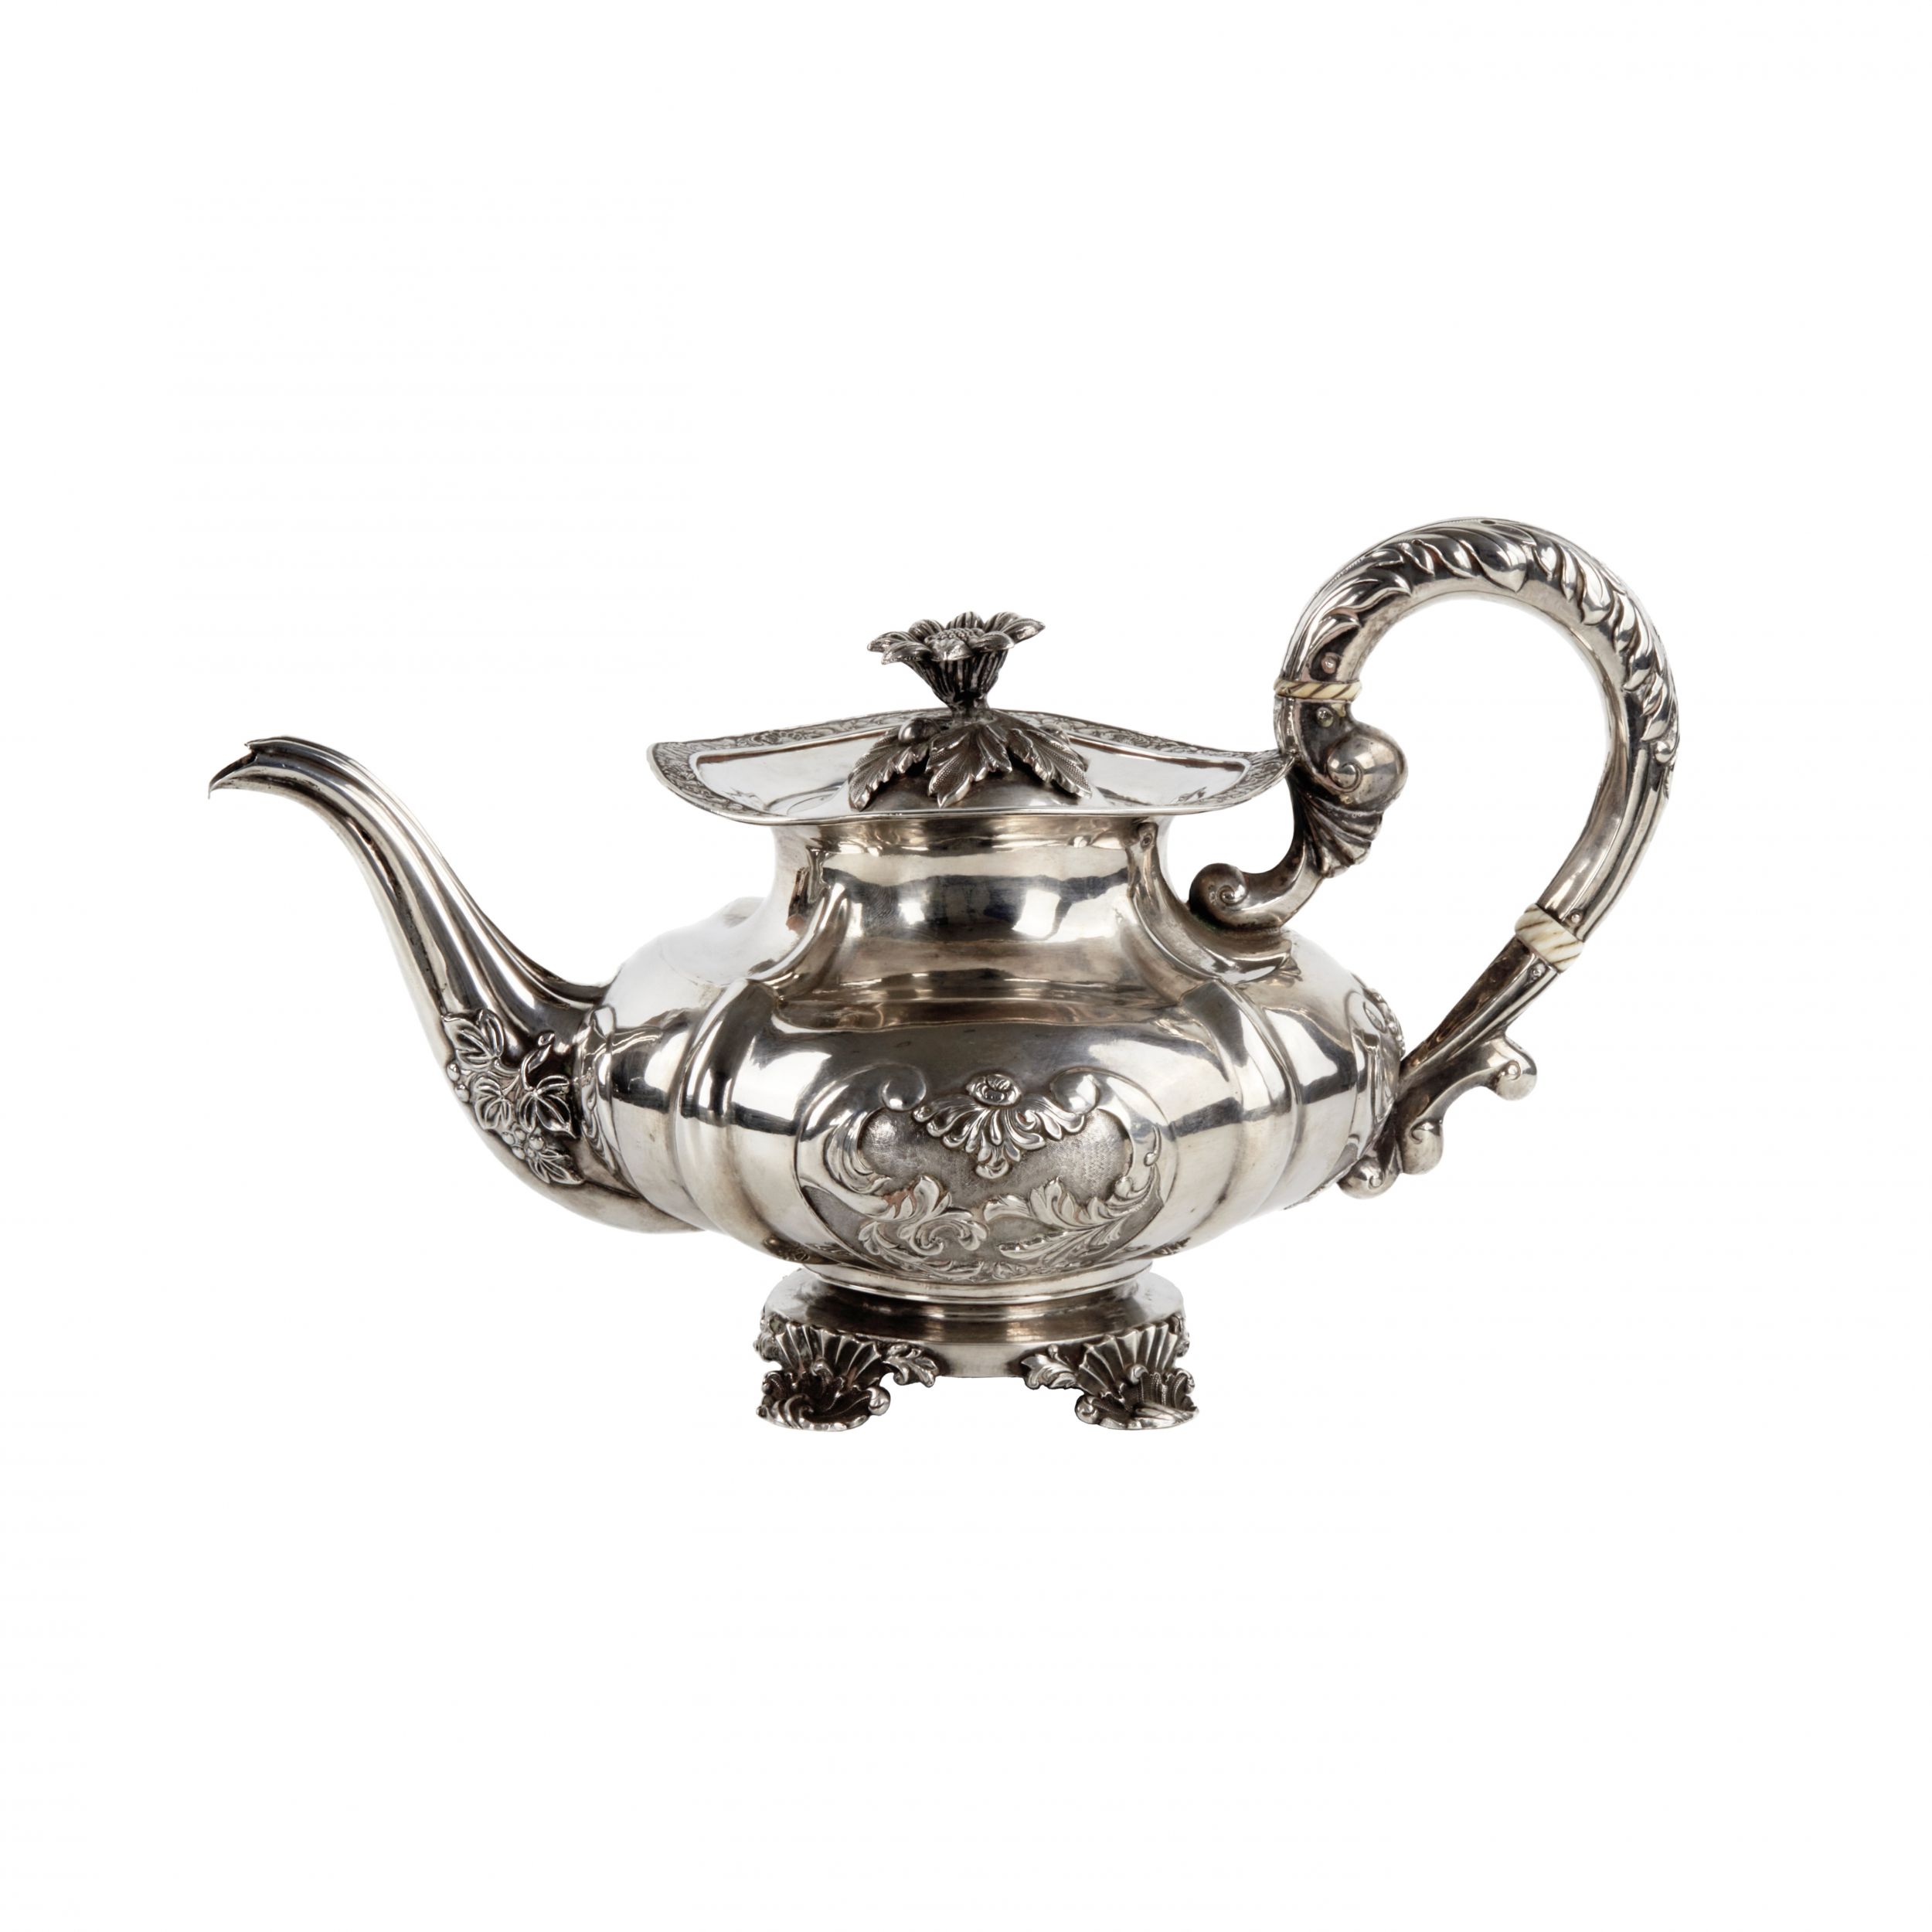 Russian-silver-teapot-The-Russian-Empire-Riga-1844-